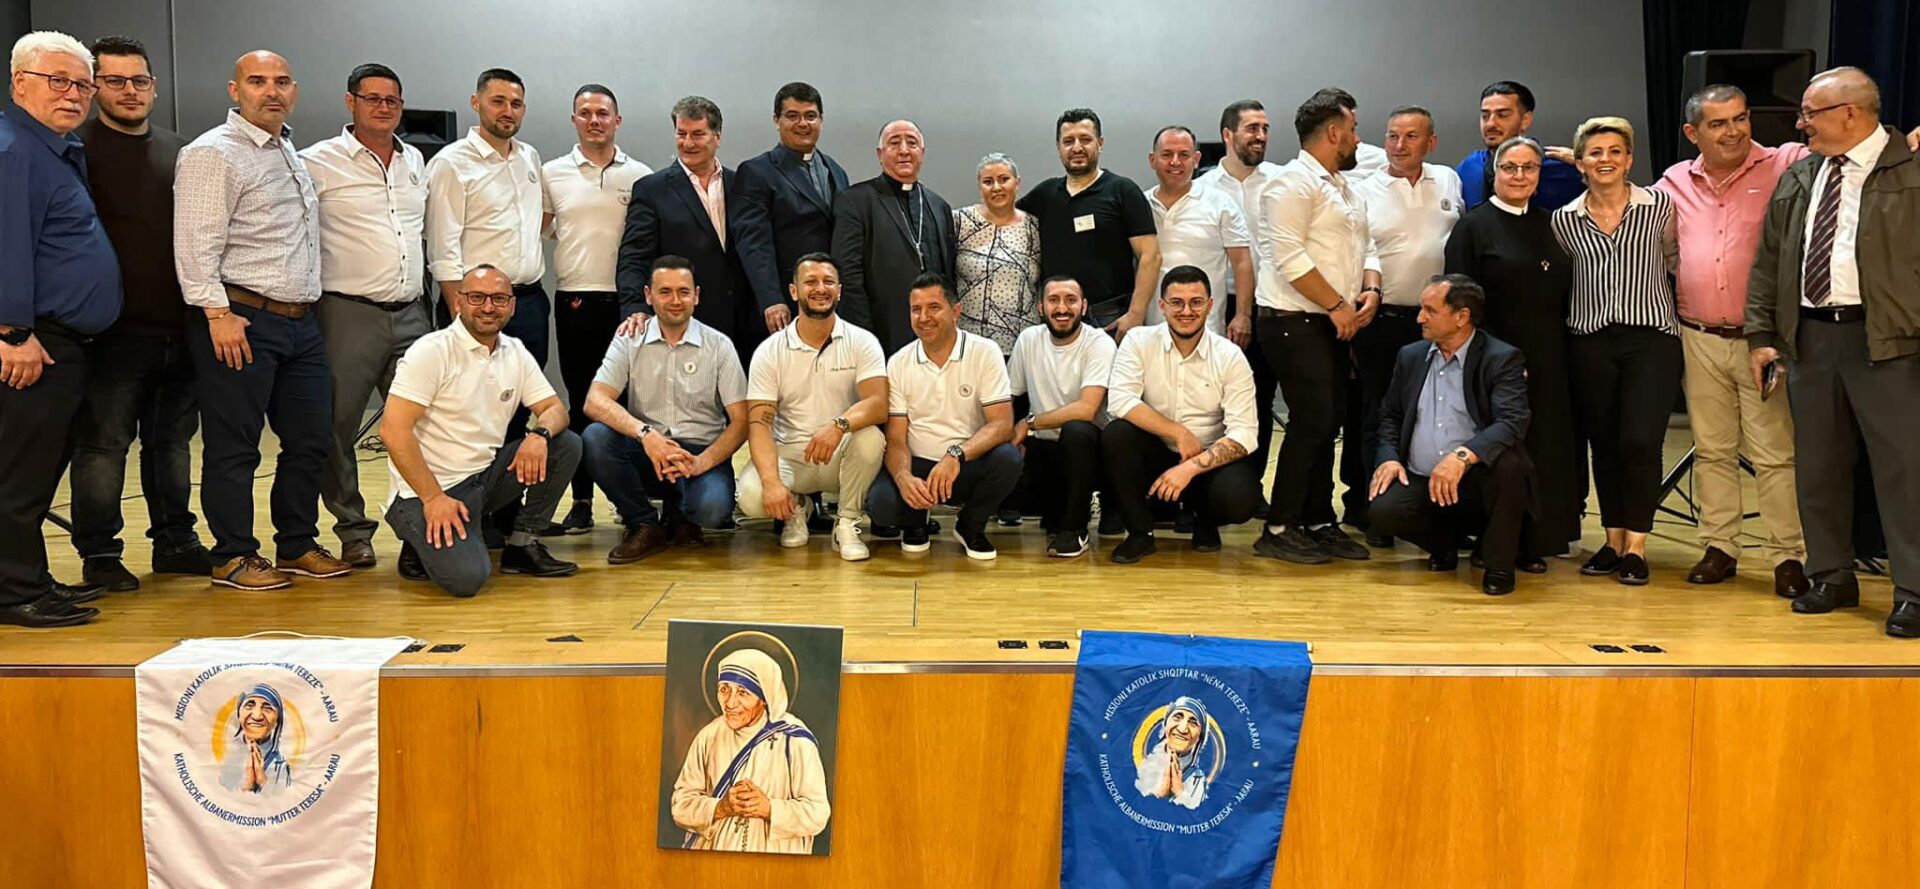 Des membres de la Mission catholique albanaise Ste Mère Teresa, le 3 juin 2023, à Birr (AG) | © www.misioni-aarau.ch